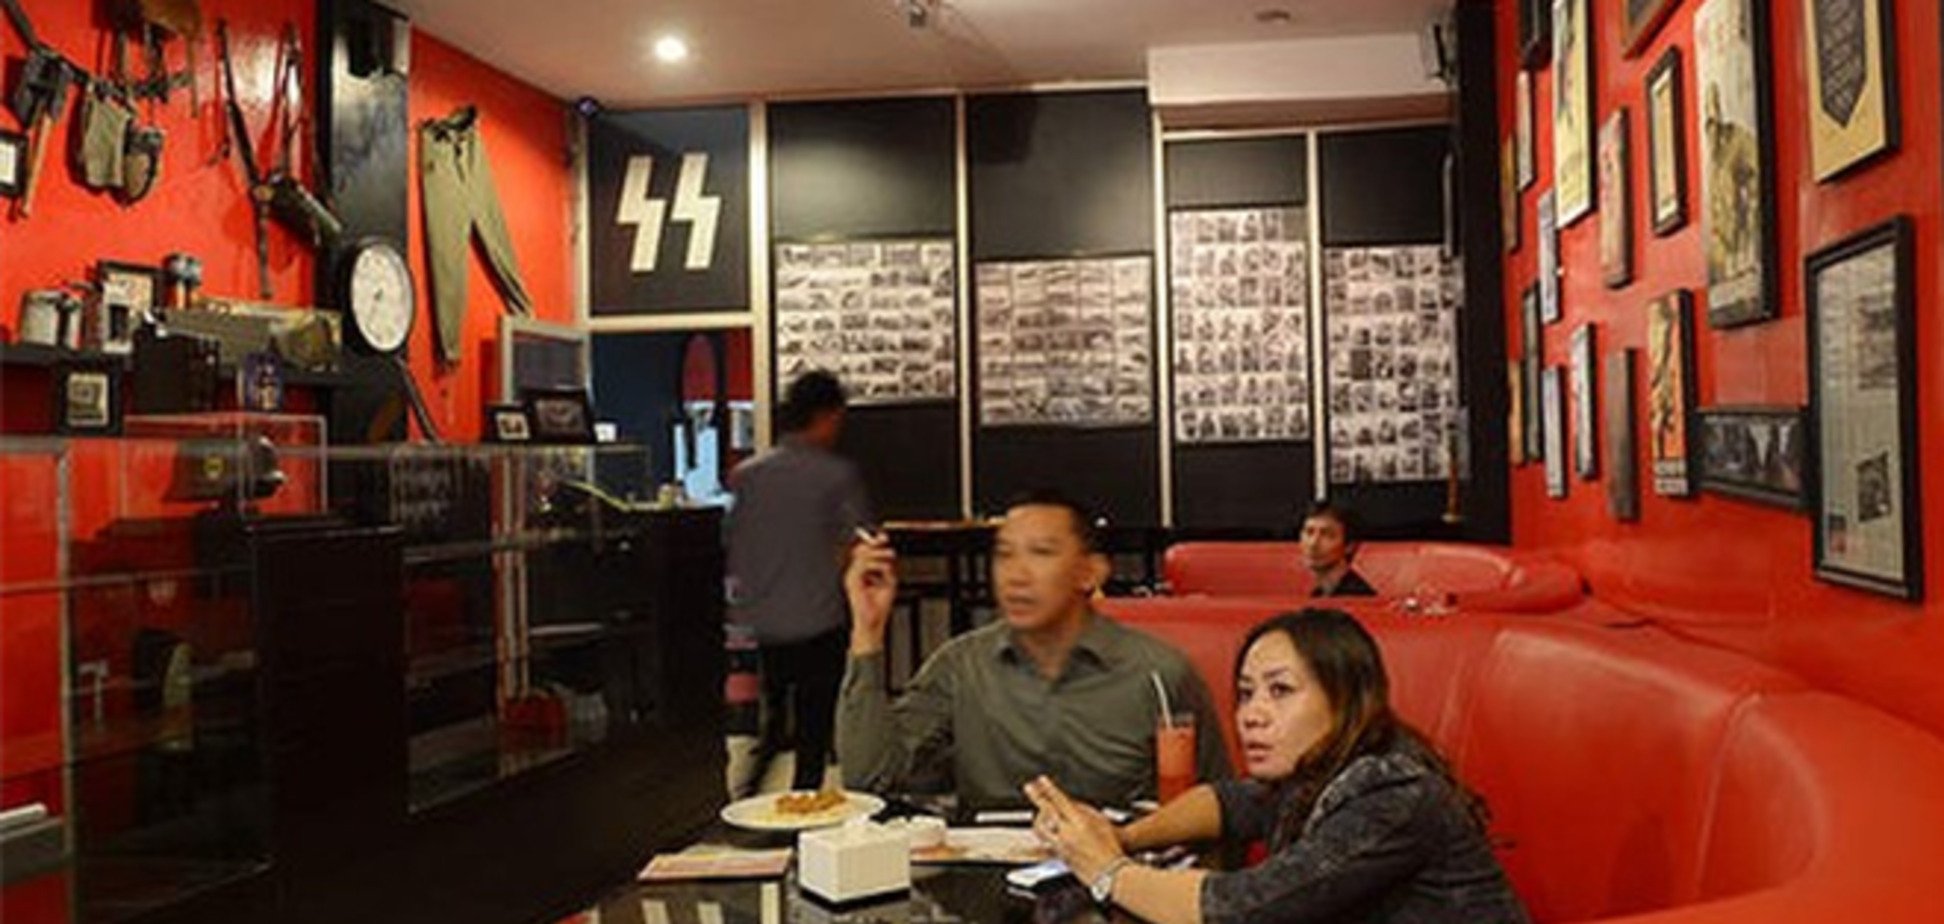 ЗМІ змусили закрити 'нацистське' кафе в Індонезії